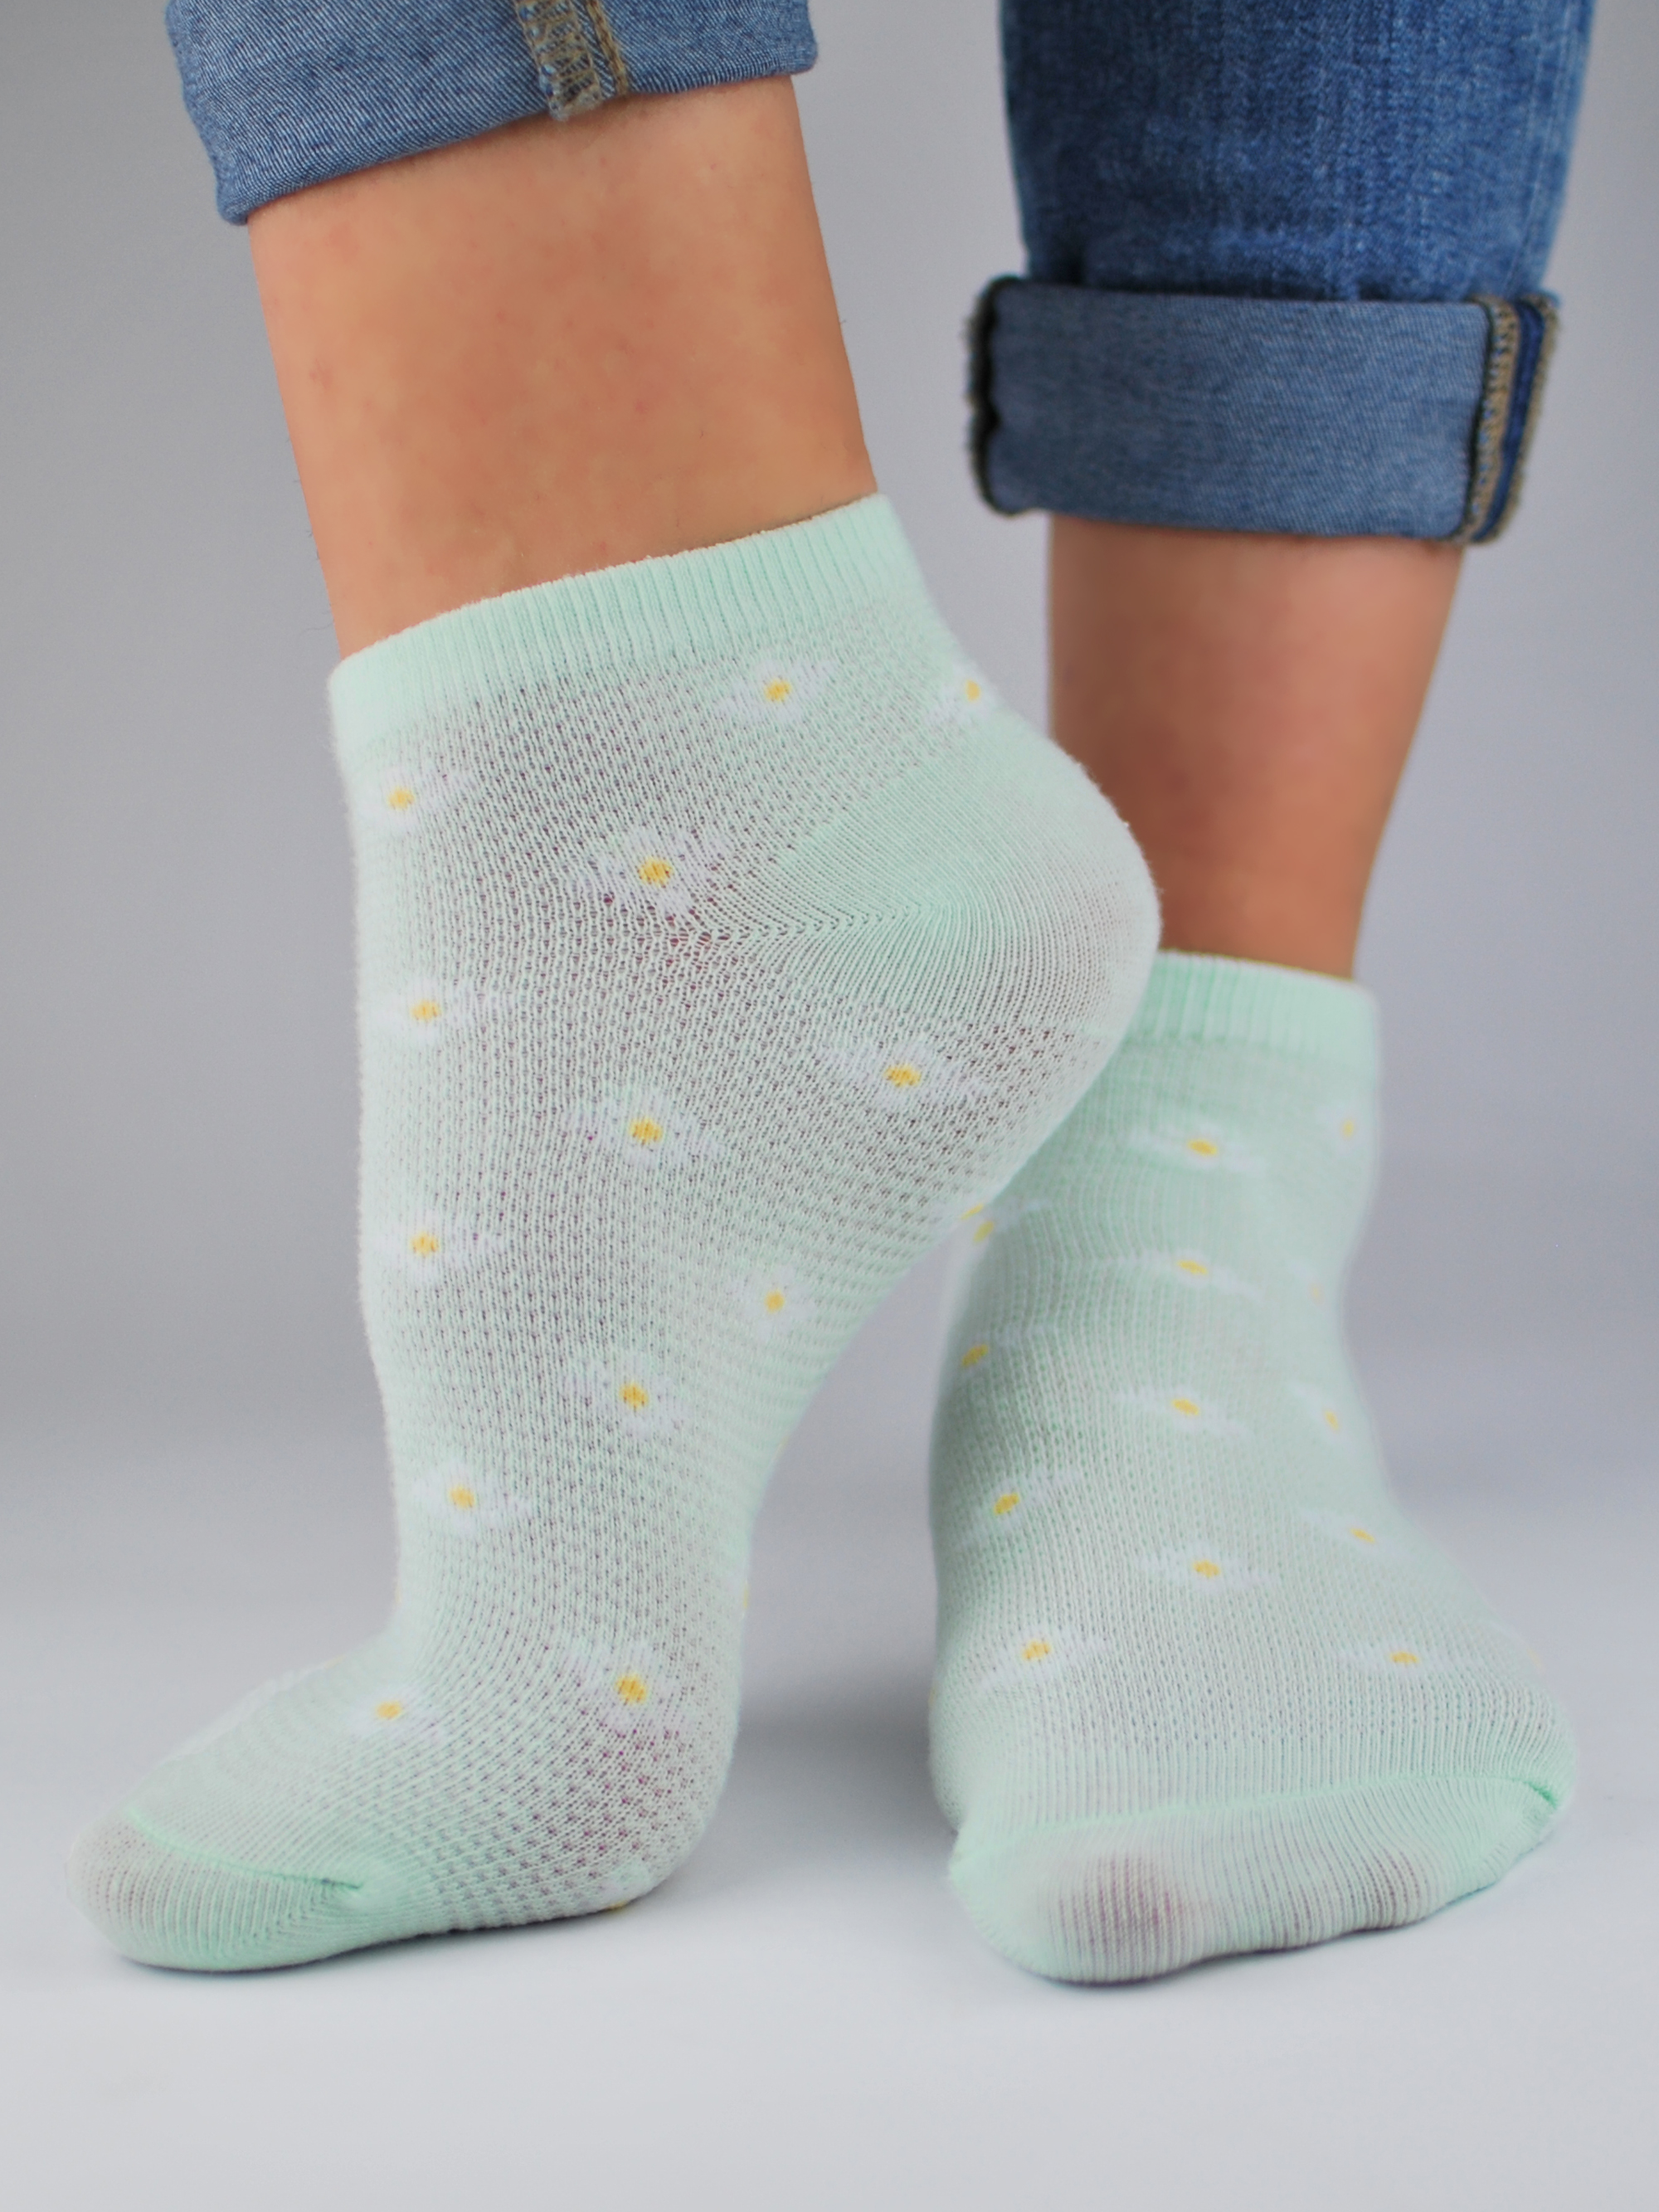 NOVITI Woman's Socks ST020-W-02